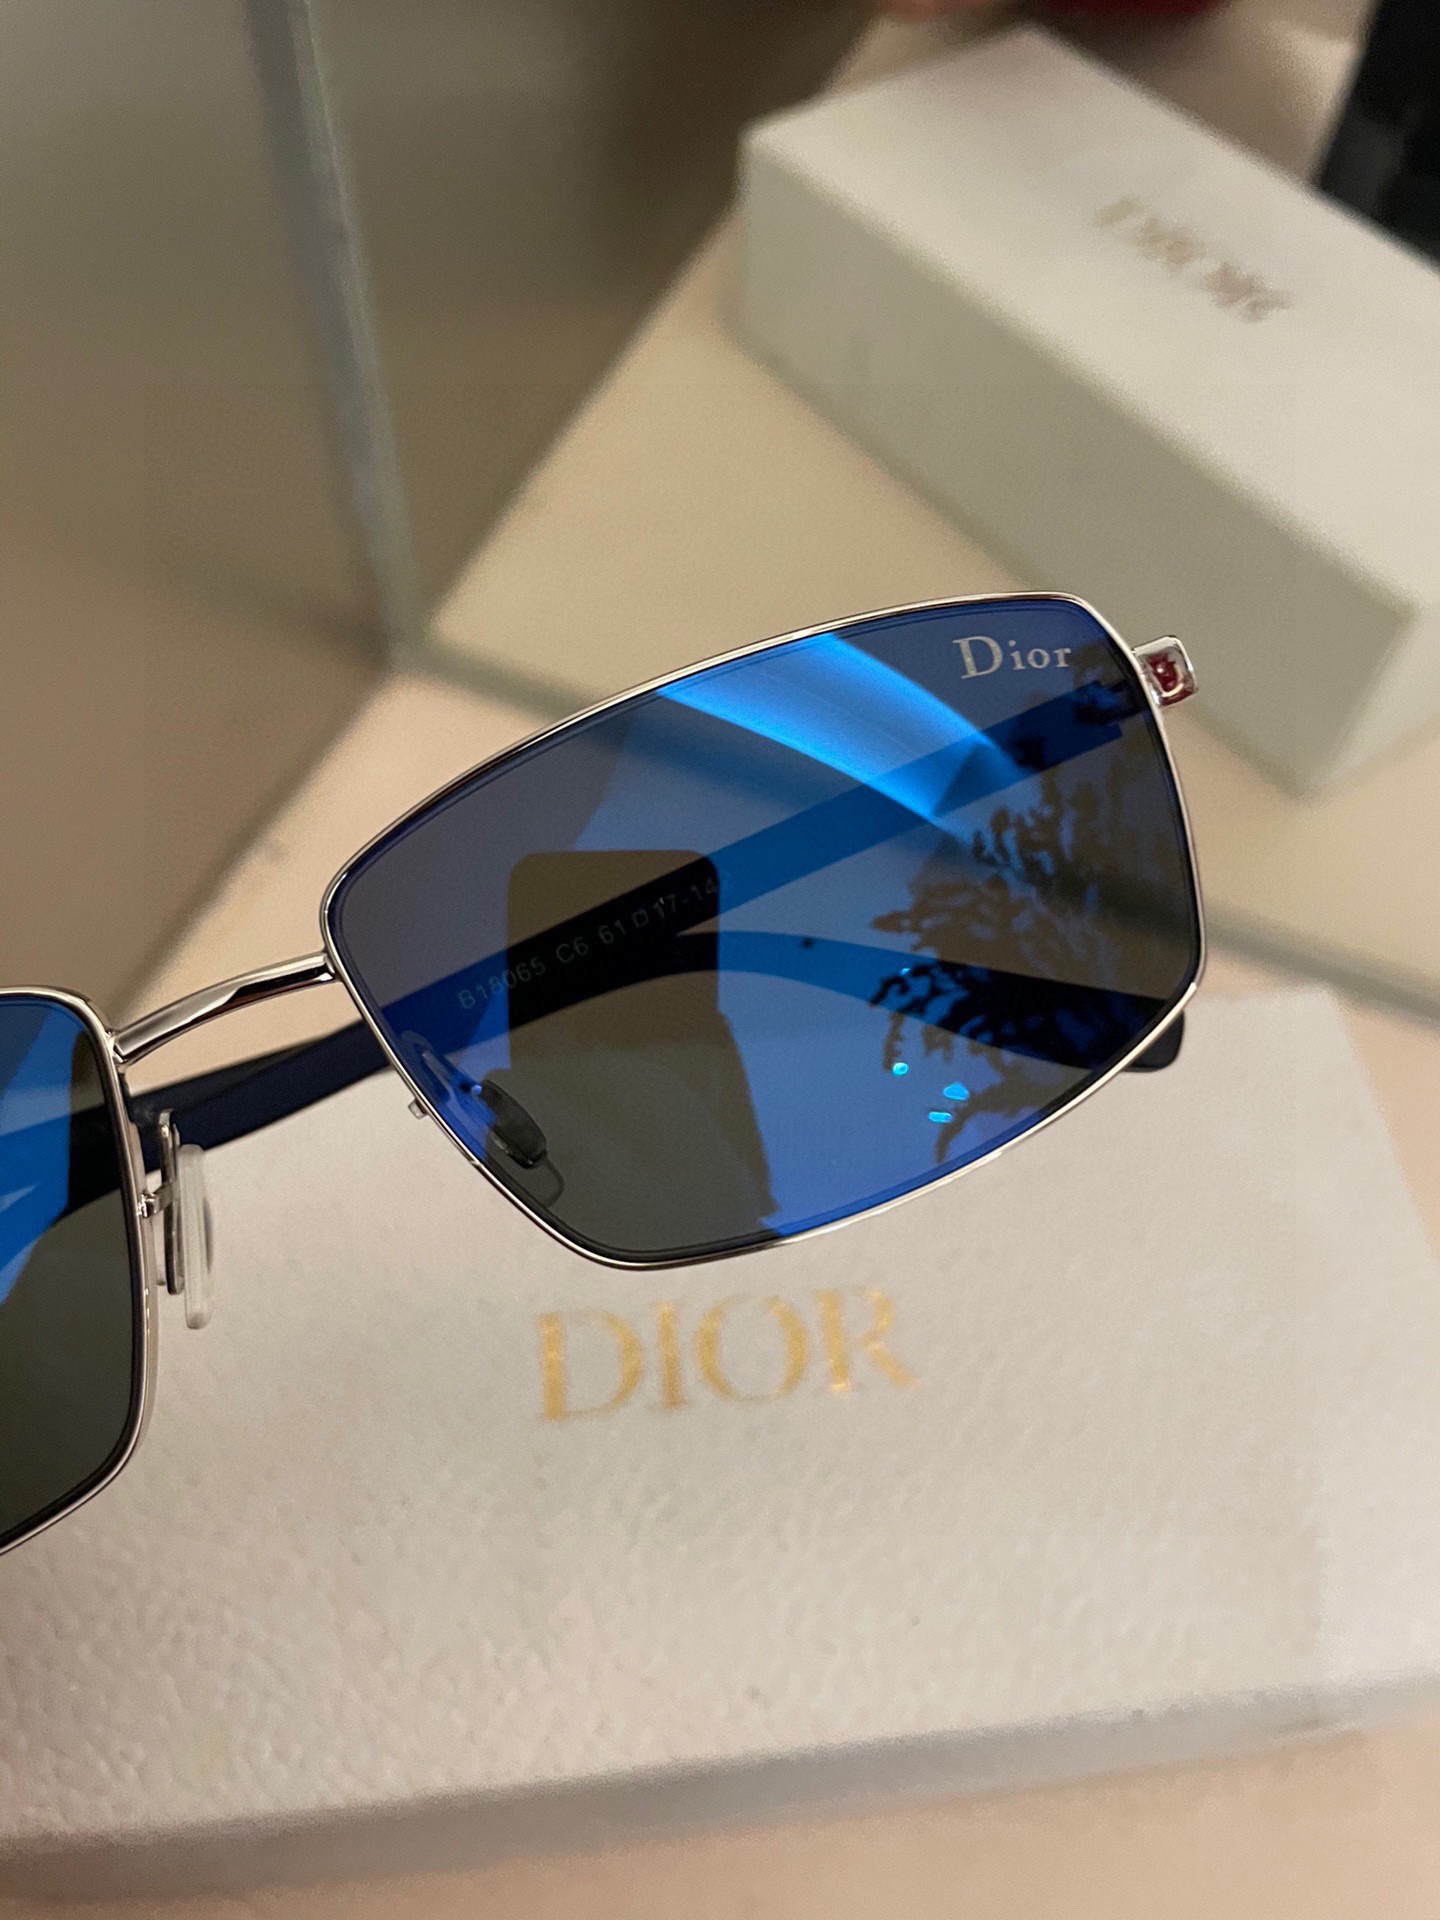 P高品质Dior男士偏光太阳镜️材质高清尼龙镜片️超轻镜腿.不变形戴上超轻不压鼻入手超赞18065